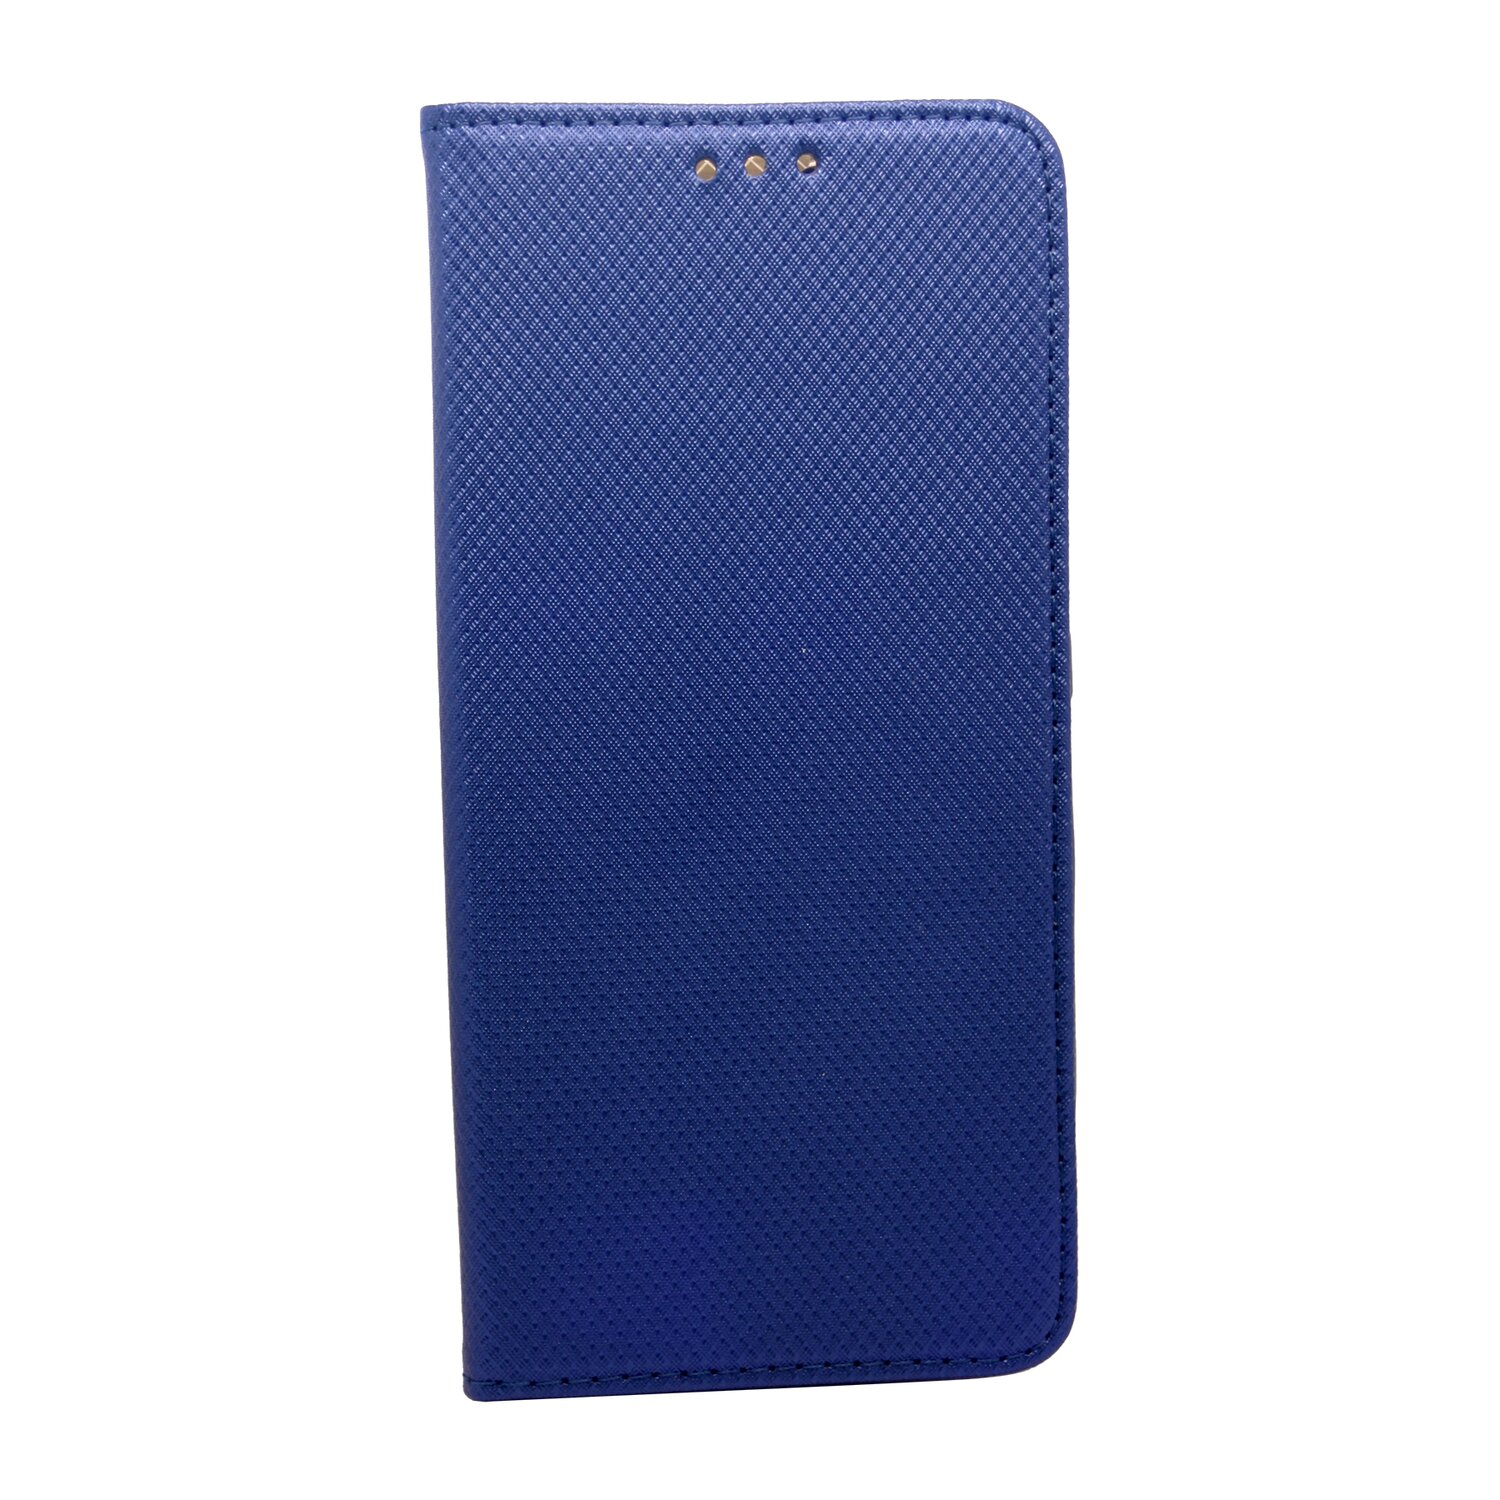 Tasch, Blau 12 5G, PRO COFI Xiaomi, Bookcover, Buch